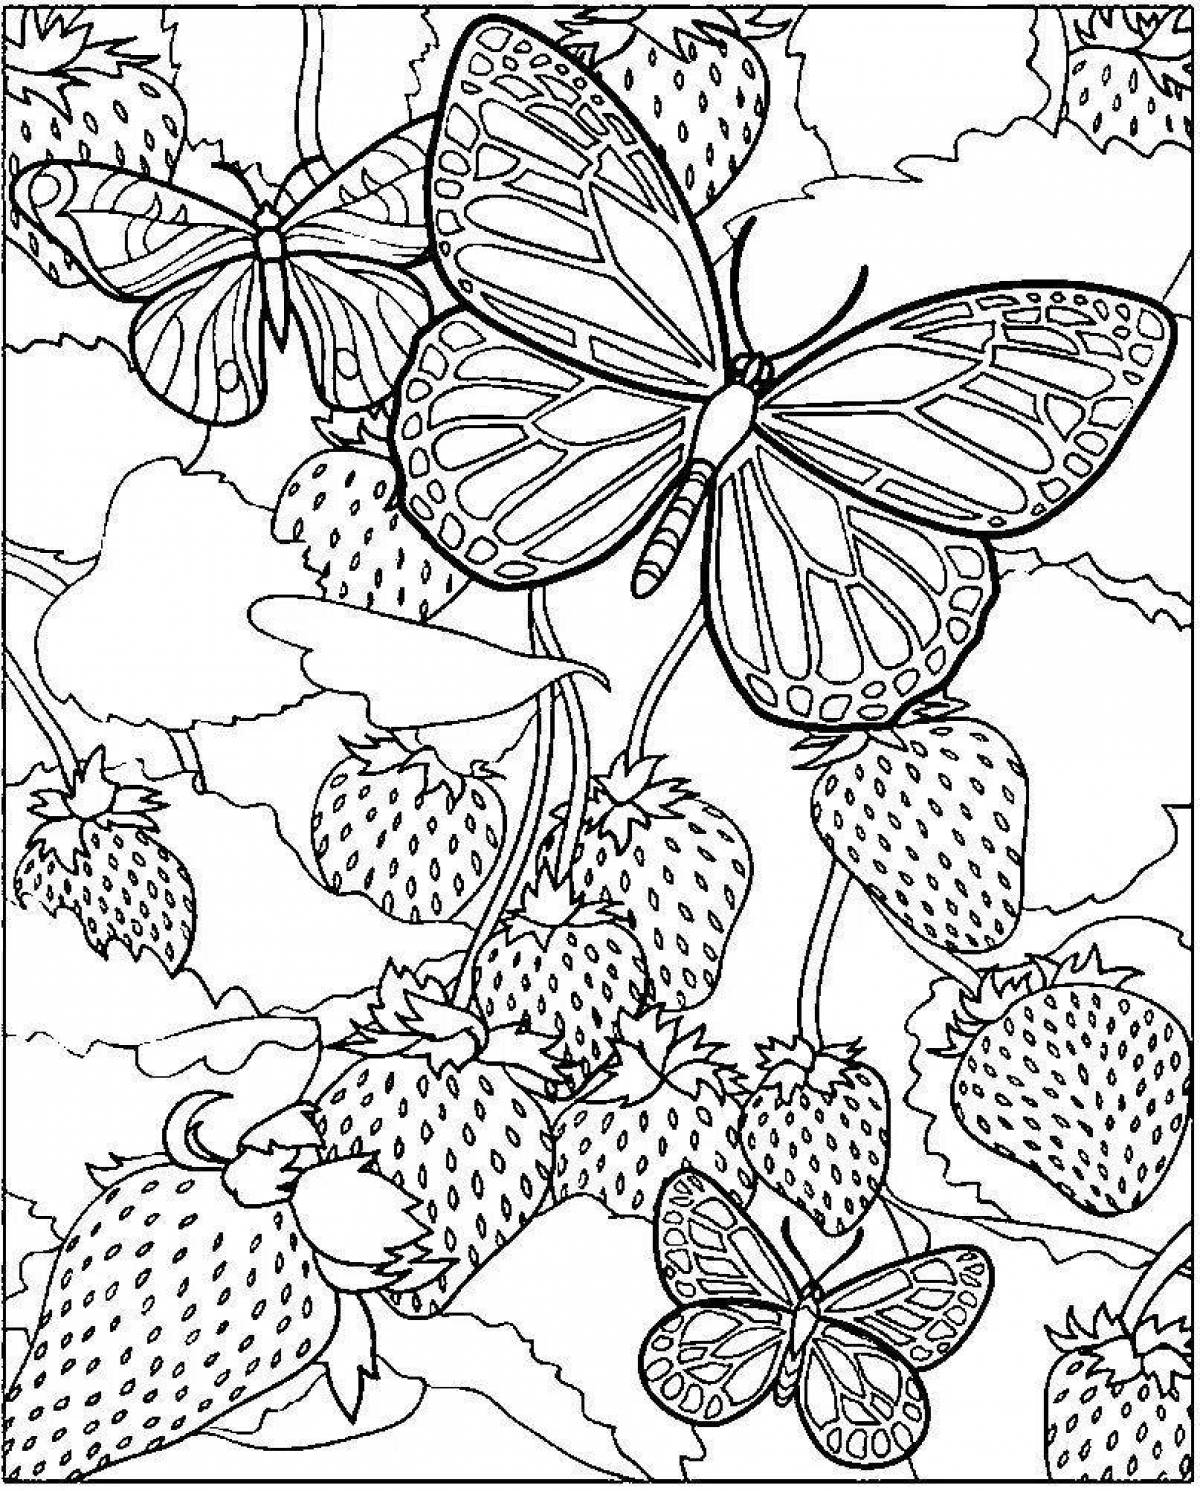 Графика для печати а4. Раскраски. Раскраска "бабочки". Цветы и бабочки. Раскраска. Картинки для раскрашивания взрослым.